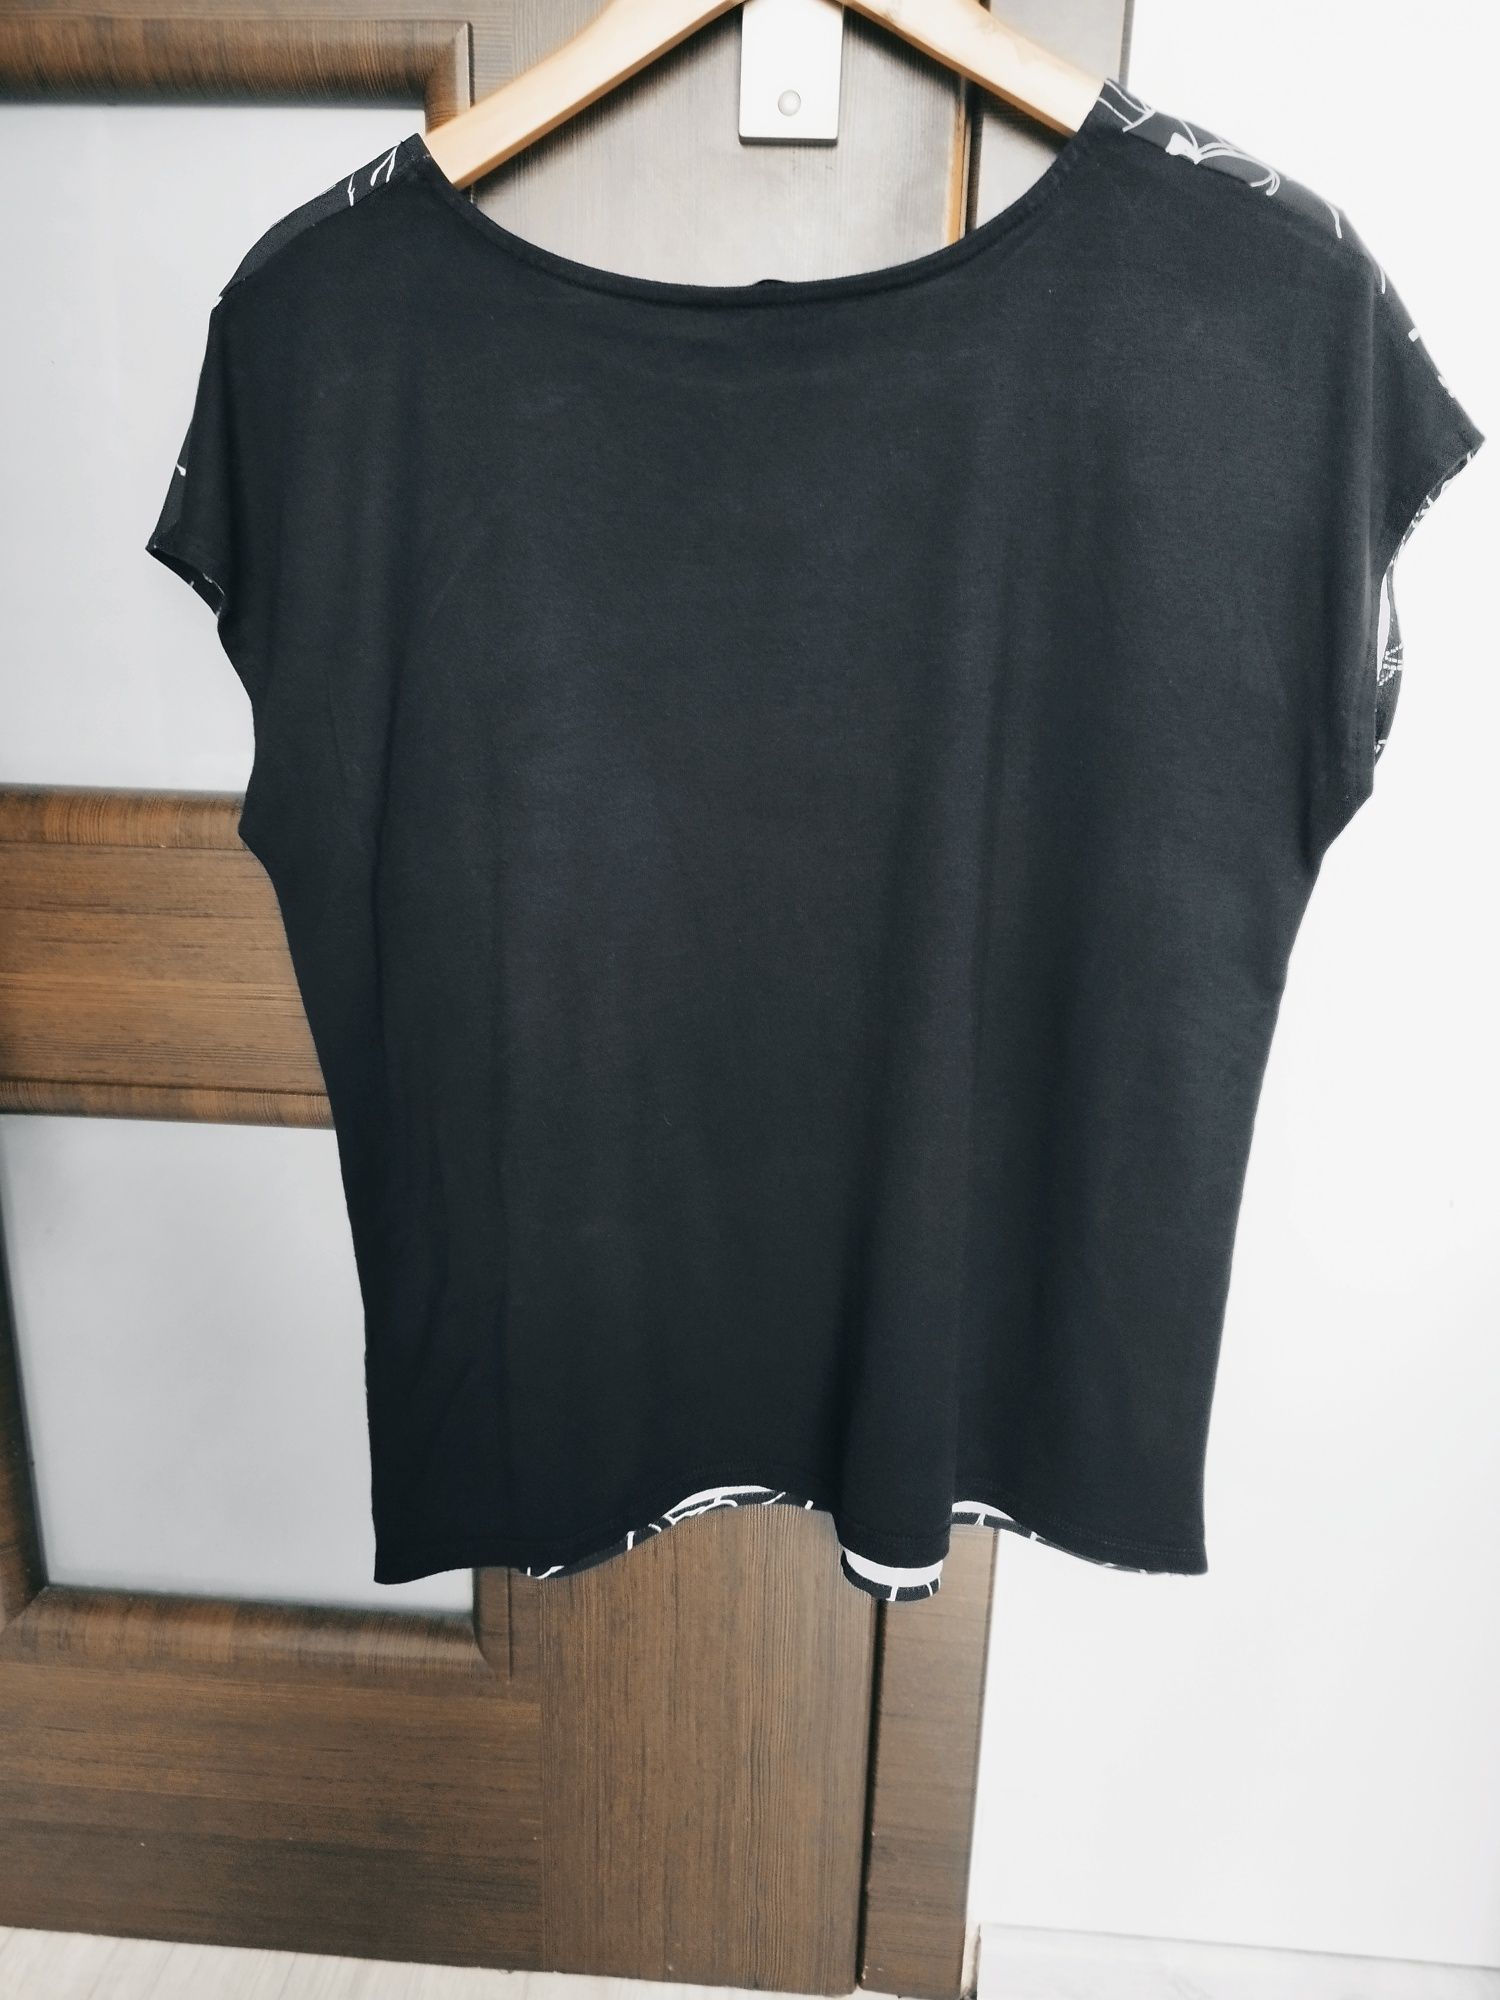 Bluza damska
Rozmiar 12
Wymiary:
Długość całkowita 63 cm
Szerokość pod